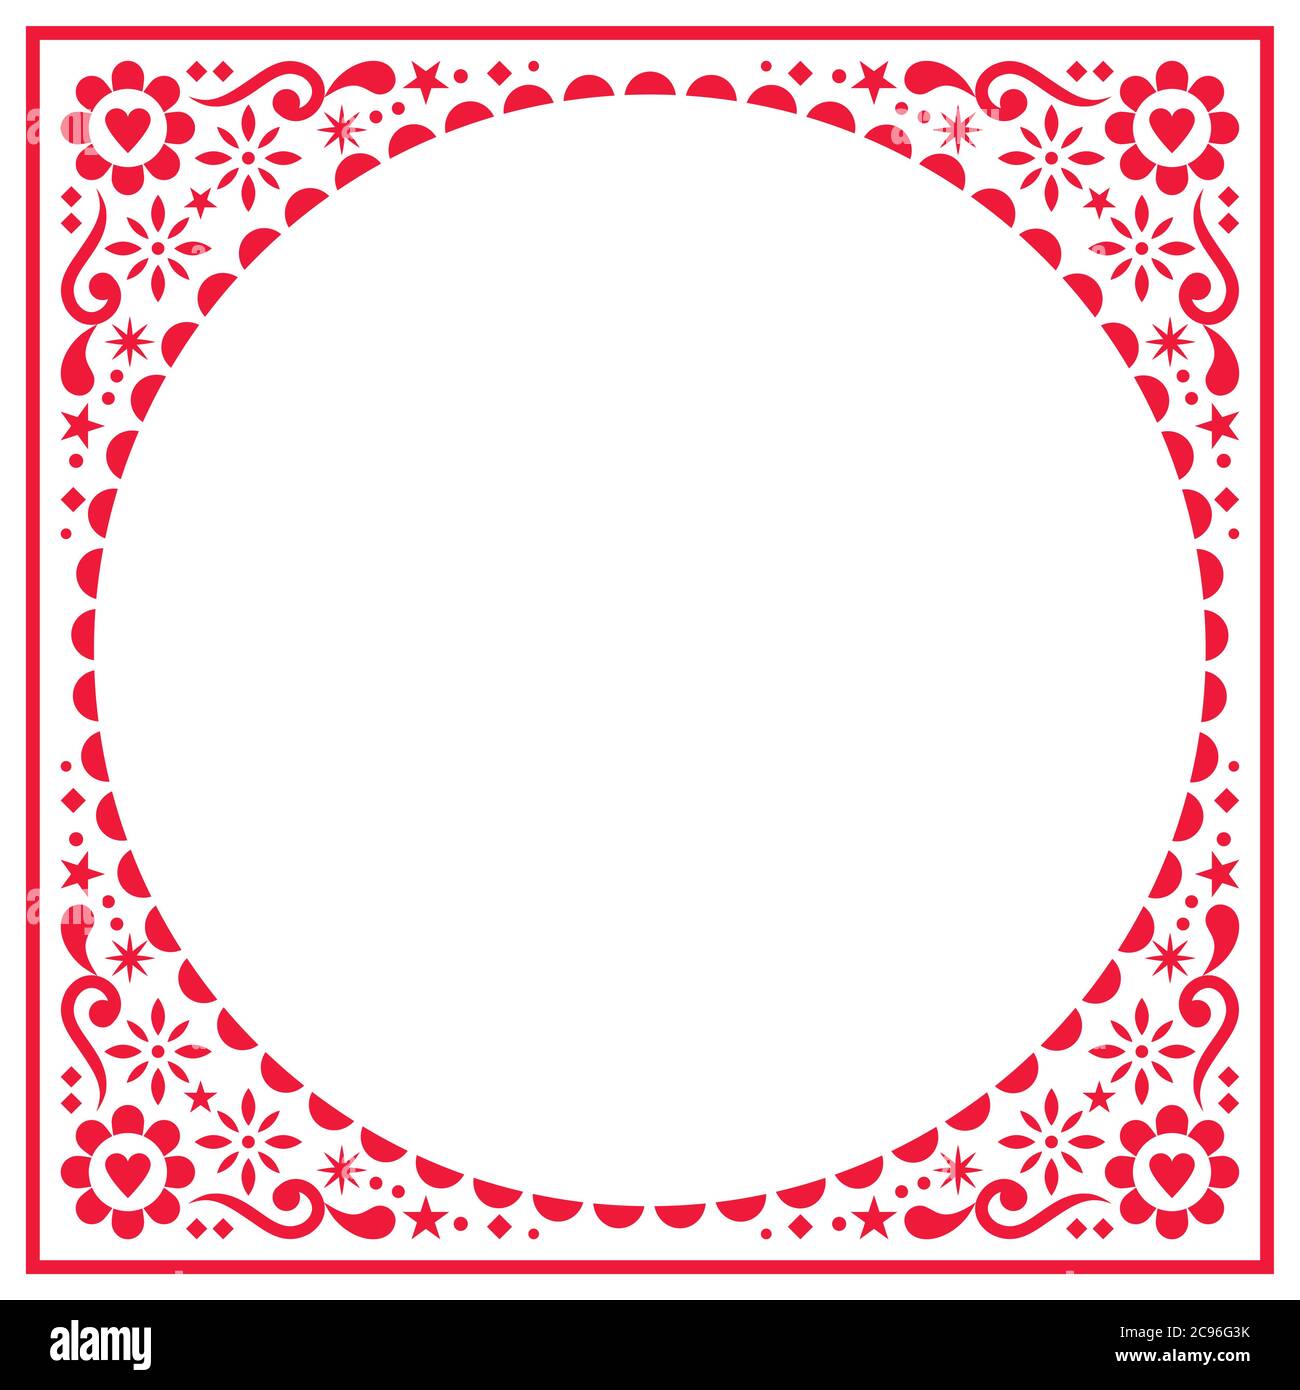 Biglietto d'auguri folcloristico scandinavo o disegno vettoriale di invito al matrimonio, motivo etnico floreale in rosso su bianco Illustrazione Vettoriale